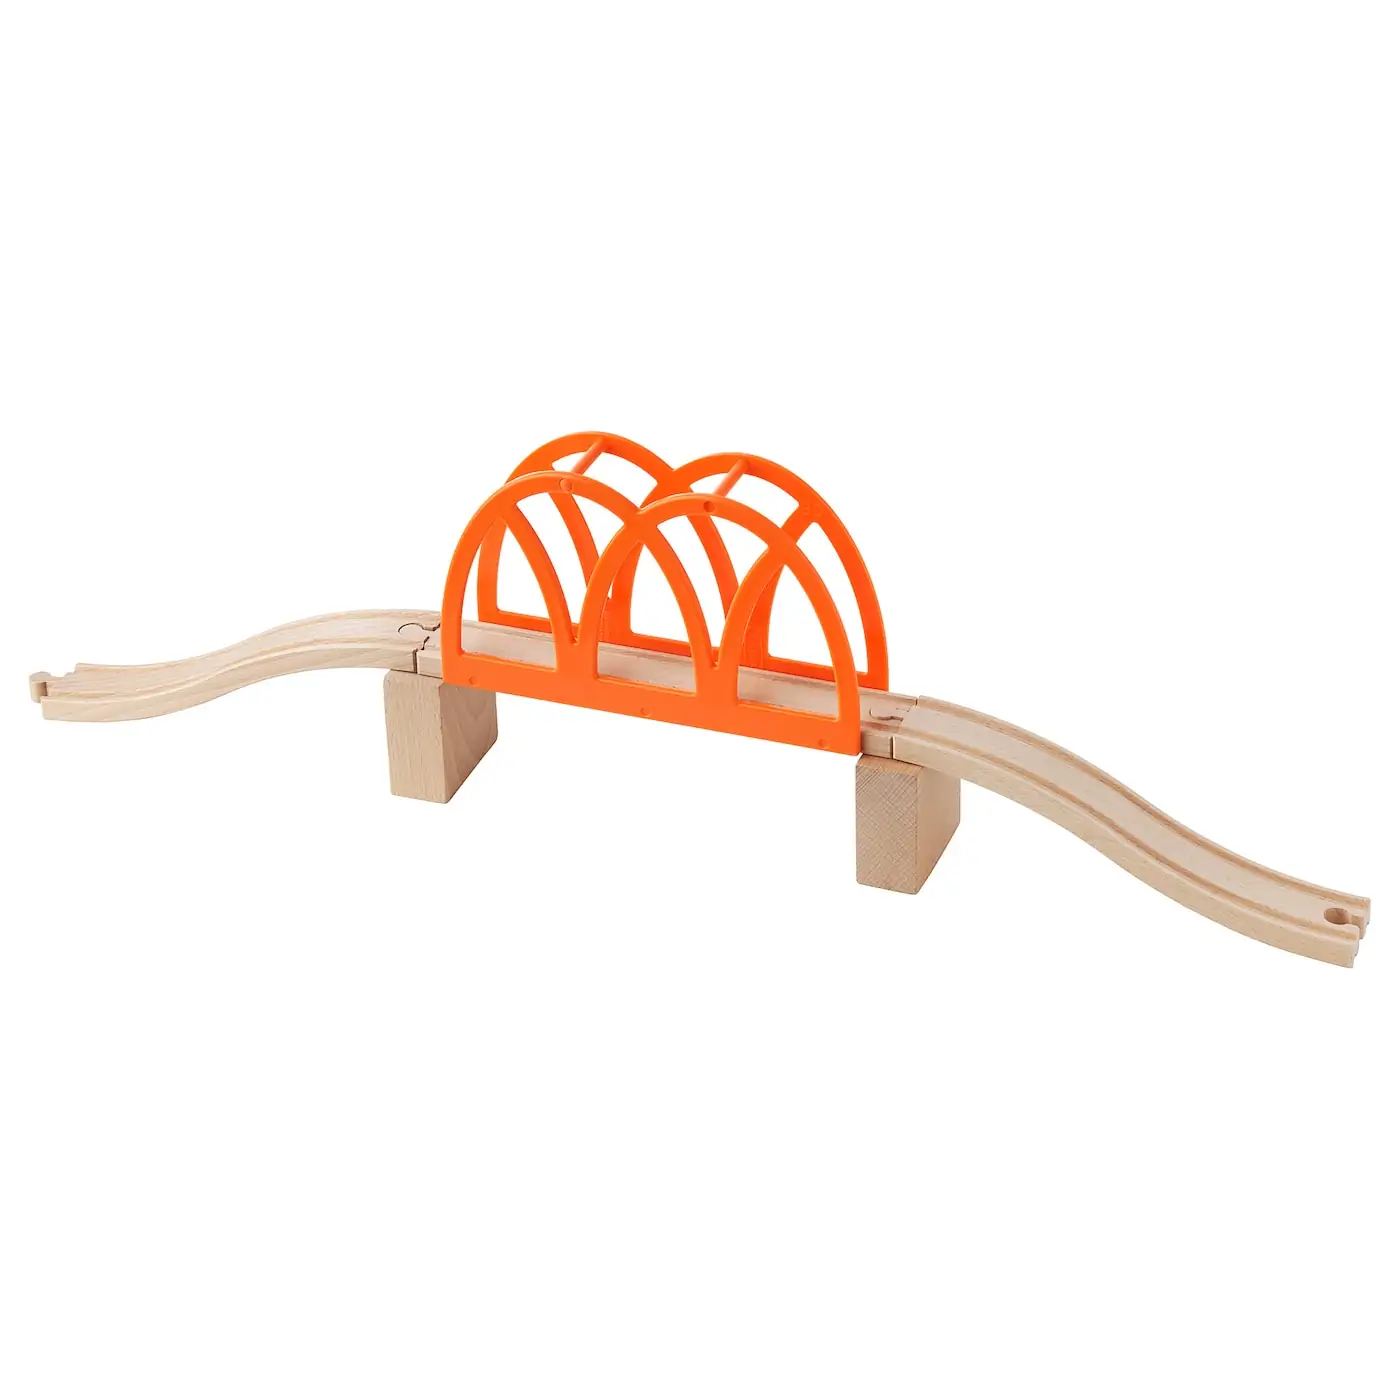 Игрушка железнодорожный мост «Ikea» Lillabo, 5 предметов, 003.627.94